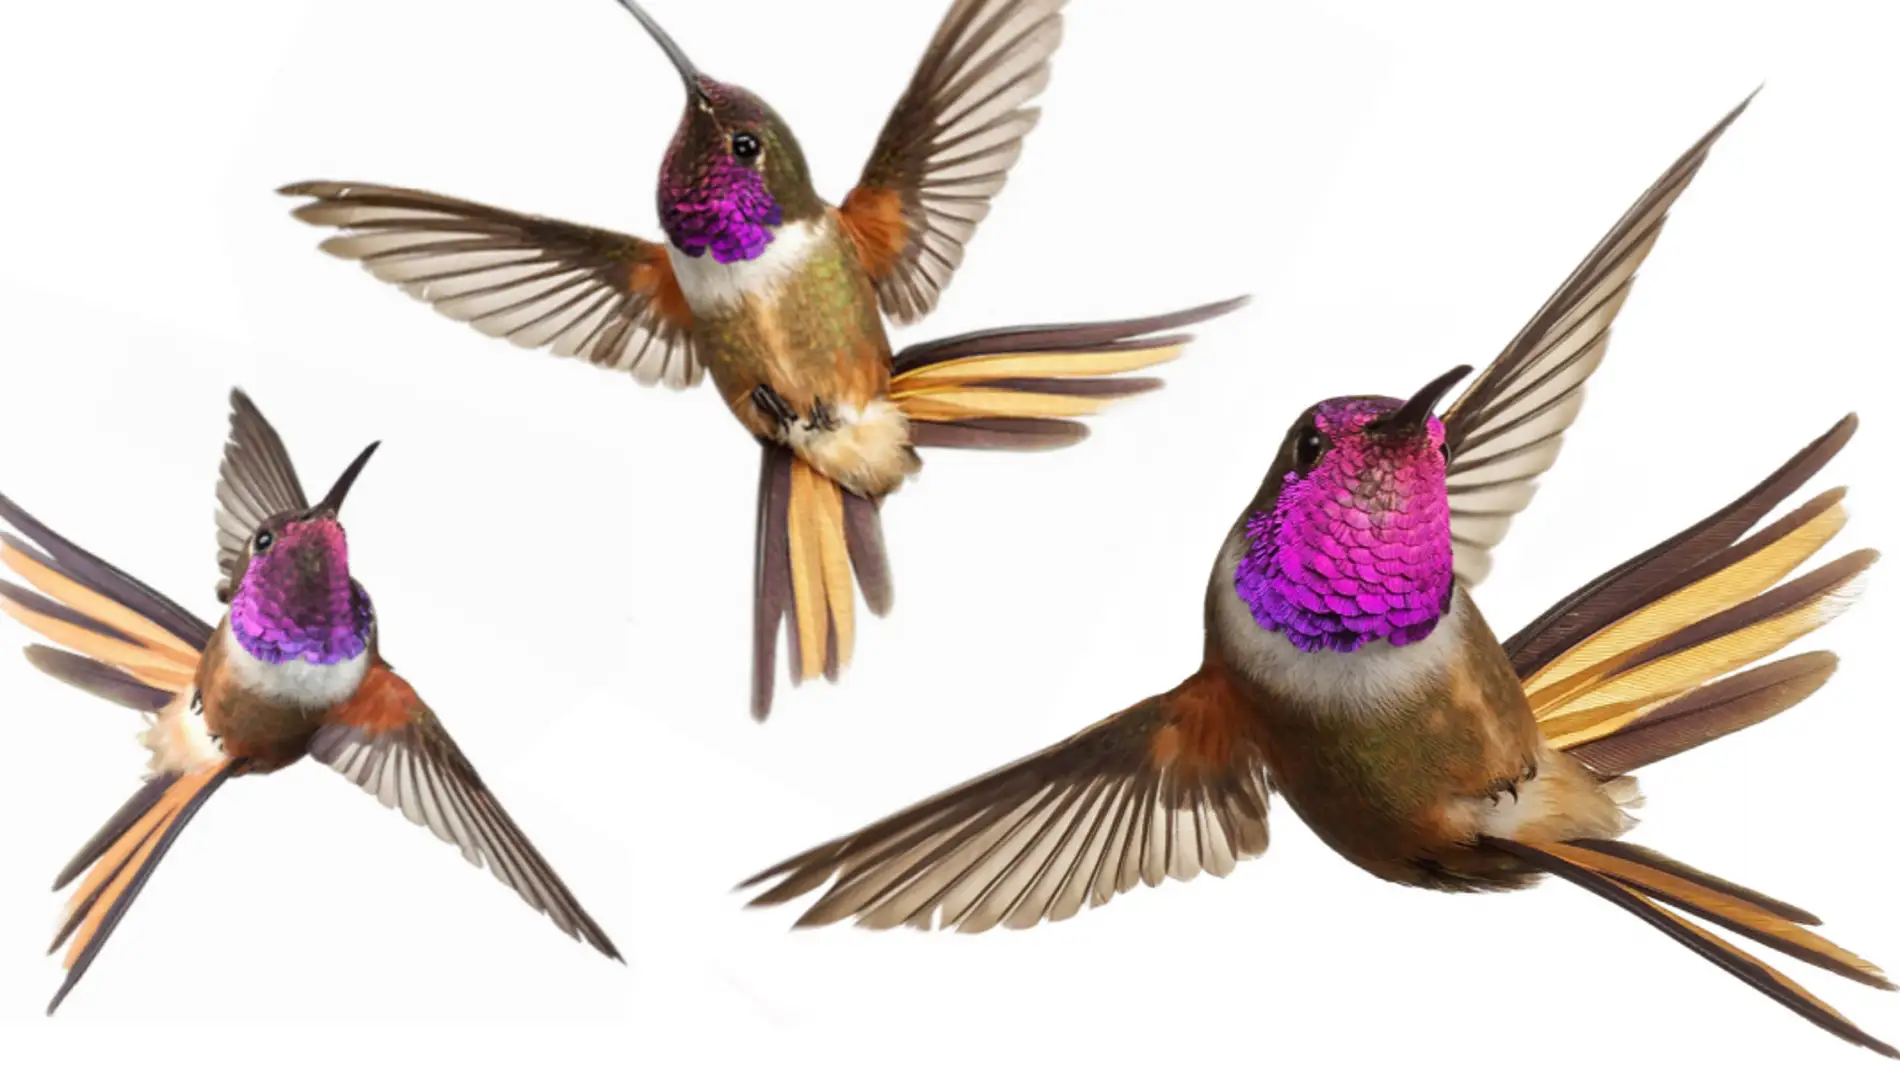 Desvelado el secreto del agil vuelo del colibri